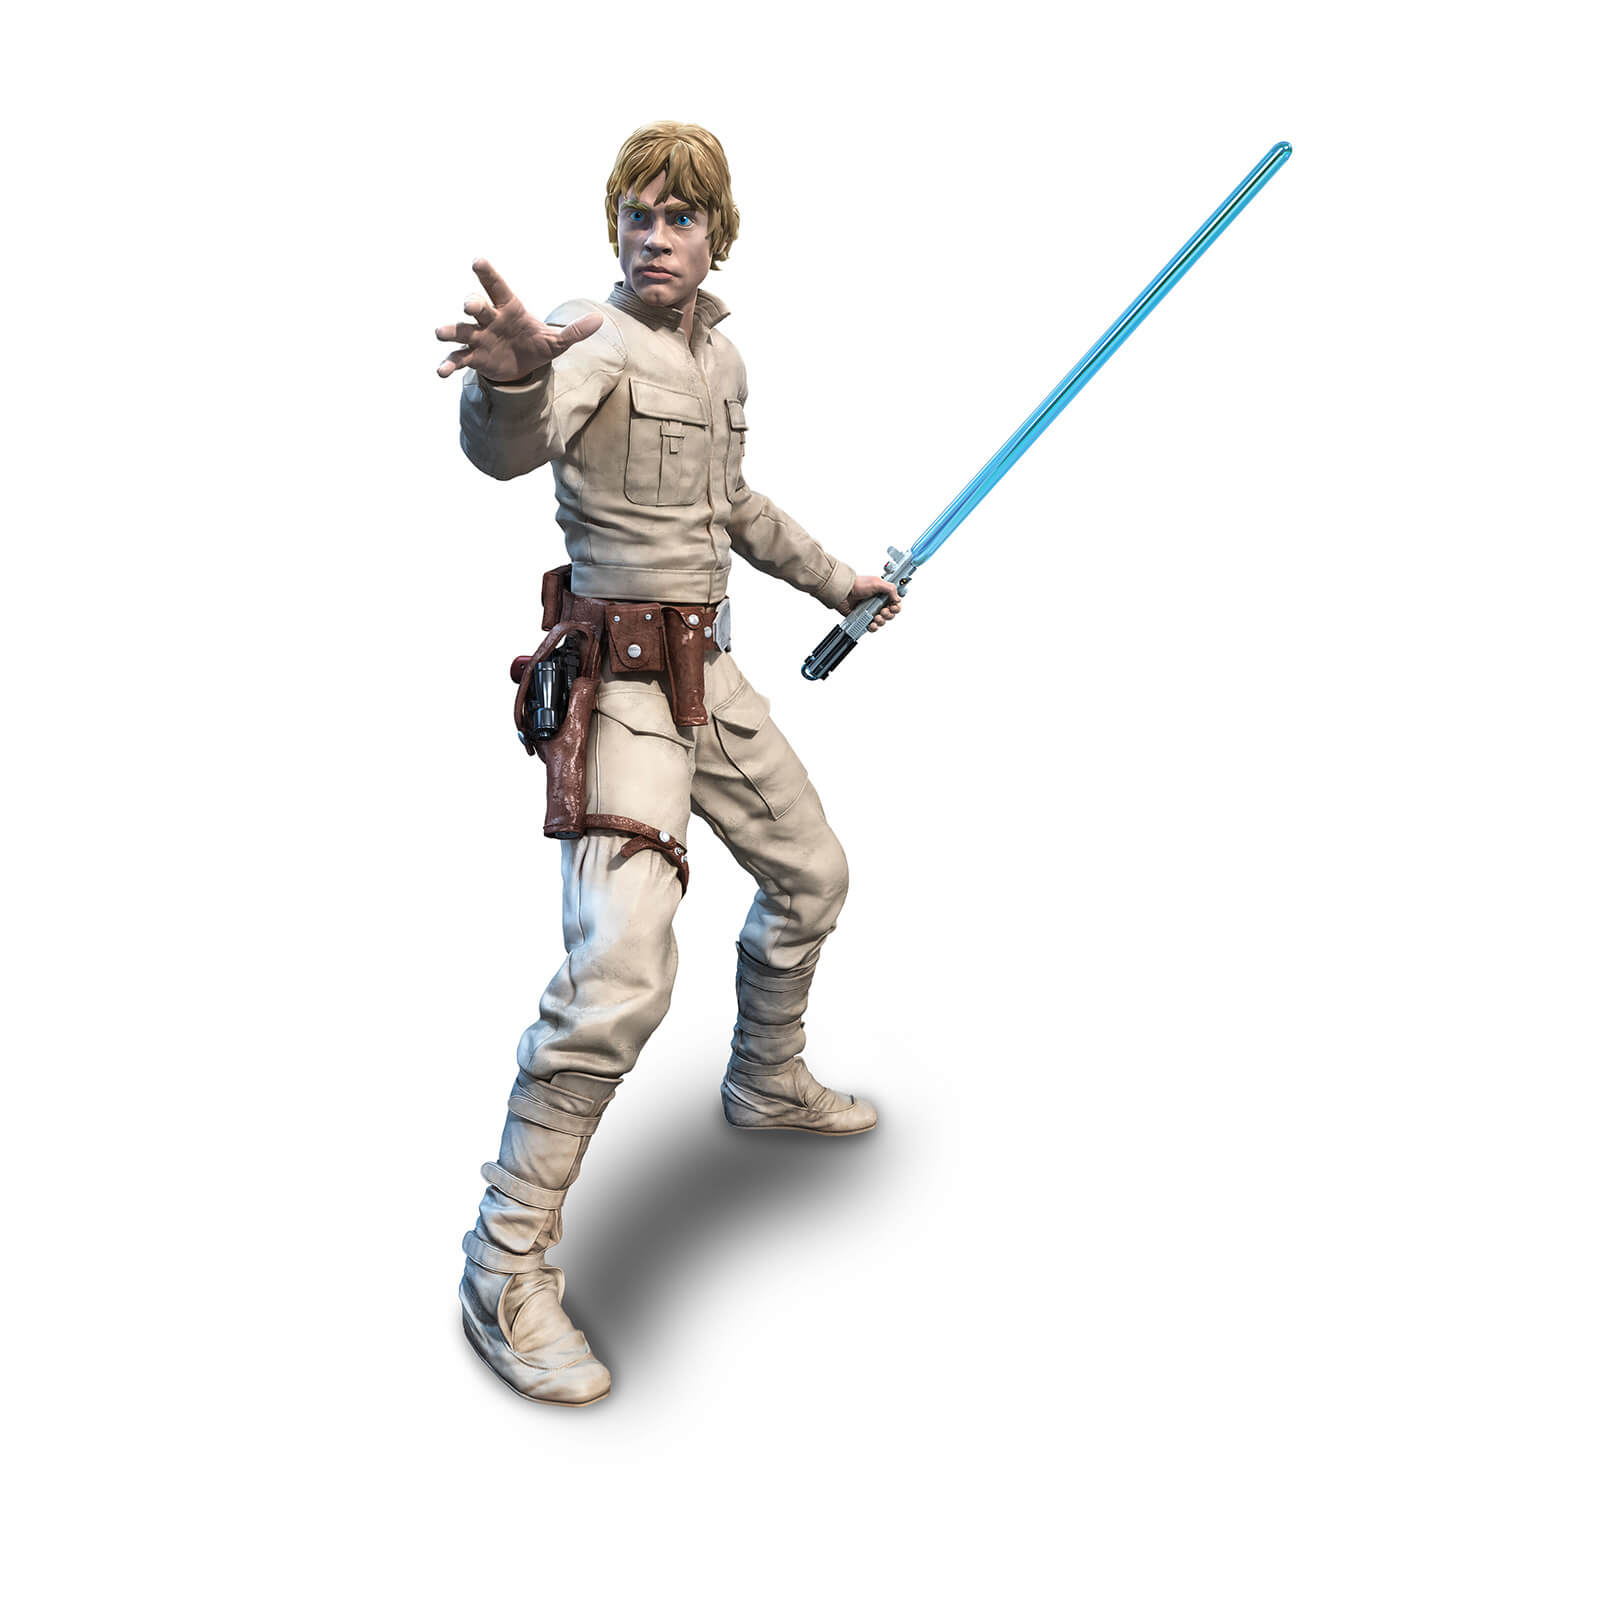 Sowas will ich auch - Hasbro Star Wars The Black Series Hyperreal Luke Skywalker 8 Inch Action Figur für nur 51,99€ inkl. Versand